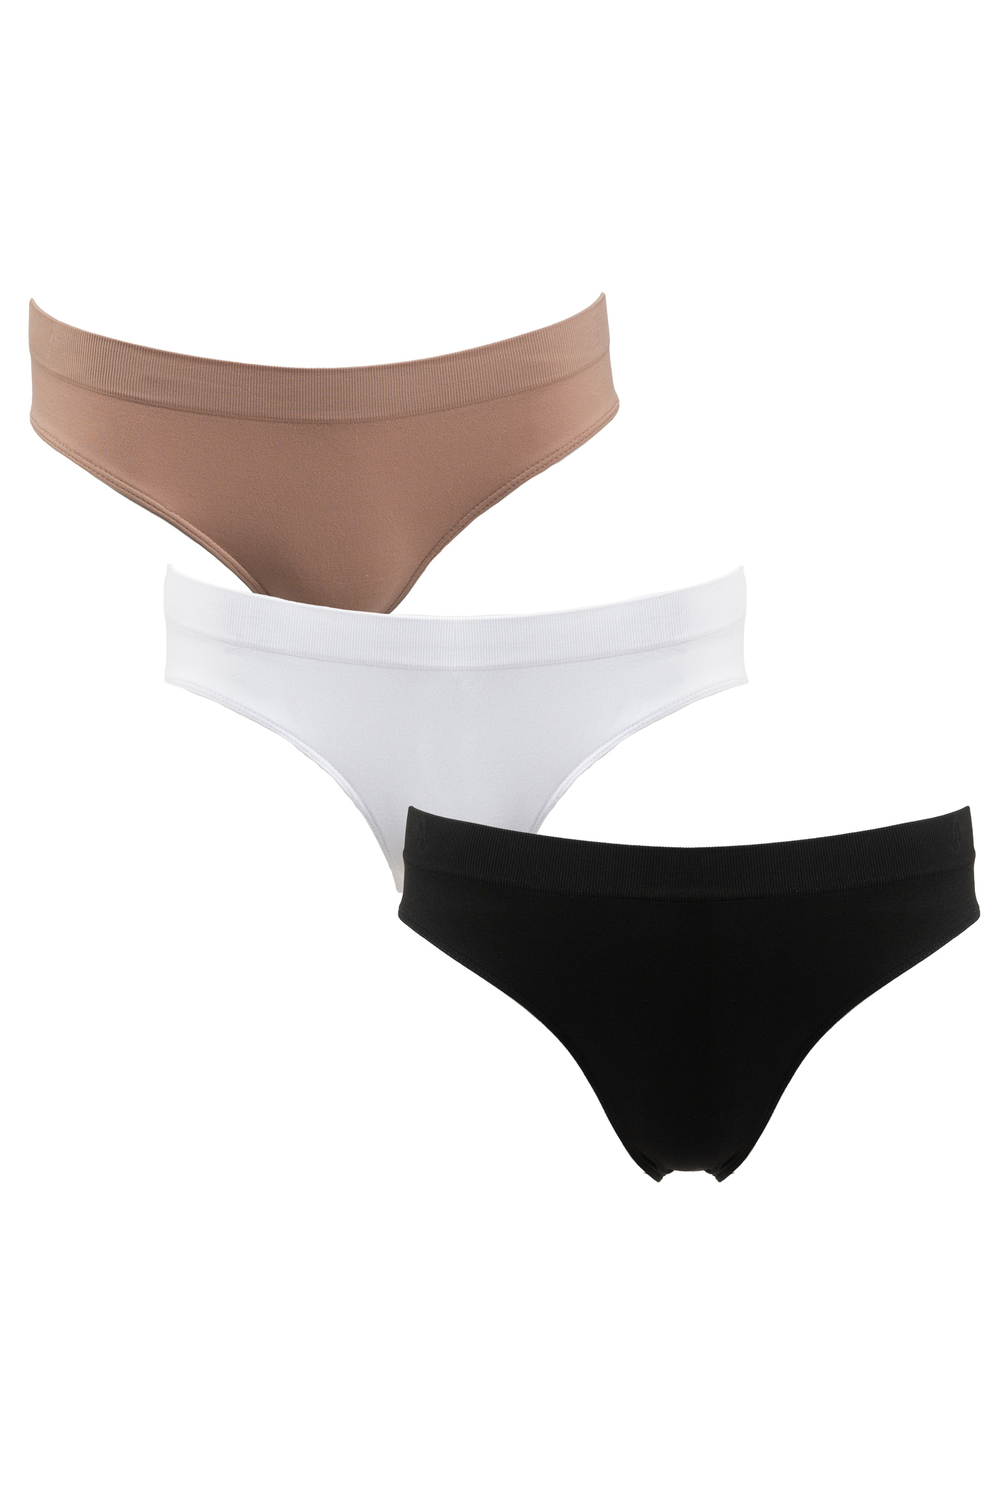 Set of 3 seamless high-cut panties - Neutrals. Size: m